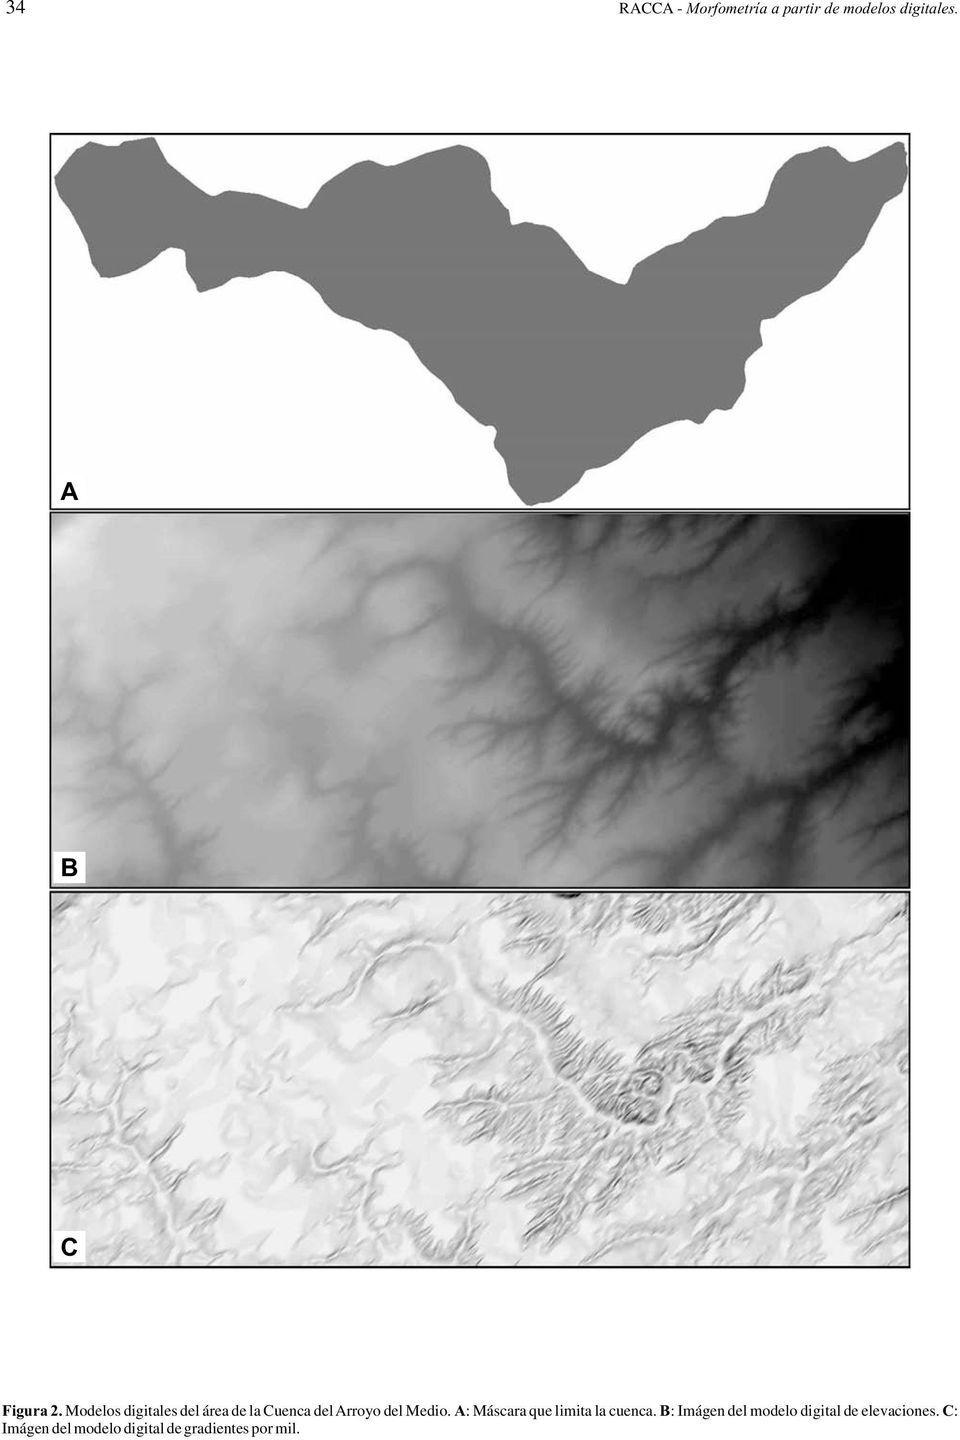 Modelos digitales del área de la Cuenca del Arroyo del Medio.